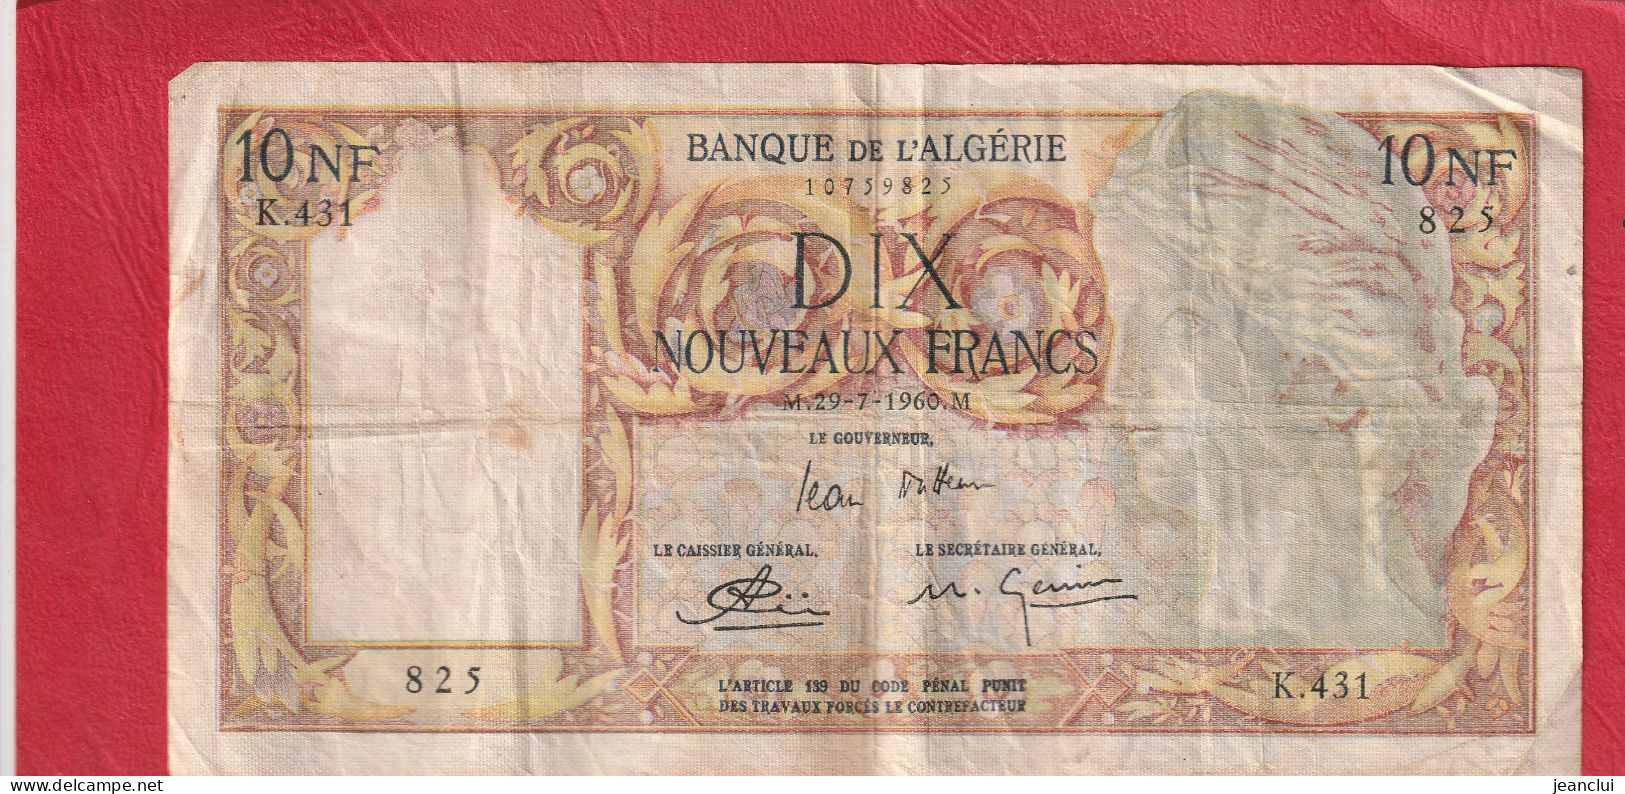 BANQUE DE L'ALGERIE  .  10 NOUVEAUX FRANCS  .  29-7-1960  . SERIE K.431  .  N° 825  .  2 SCANNES  .  BILLET USITE - Algerien